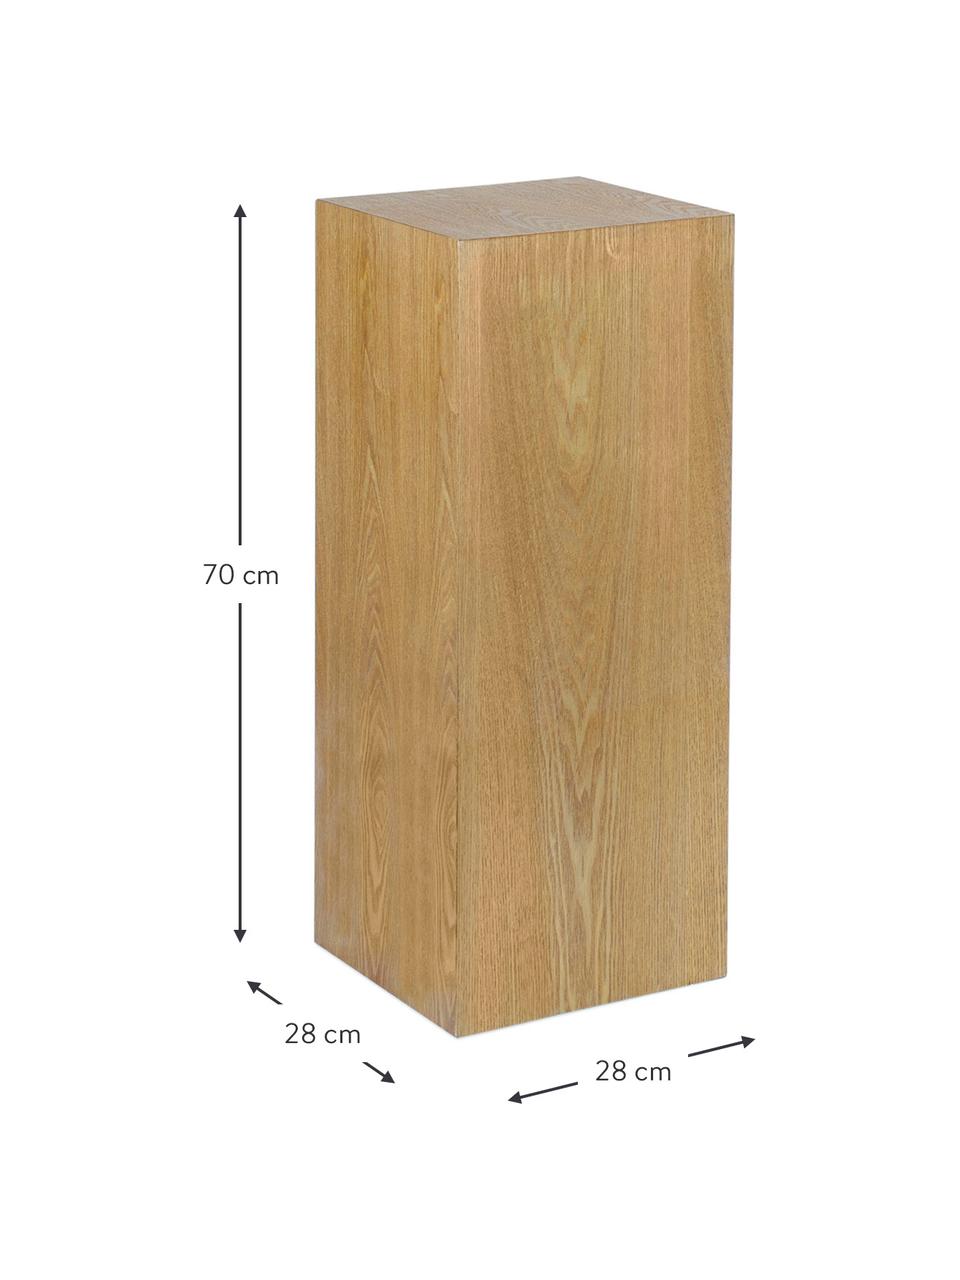 Holz-Dekosäule Pedestal in verschiedenen Grössen, Mitteldichte Holzfaserplatte (MDF), Eschenholzfurnier, Holz, B 28 x H 70 cm